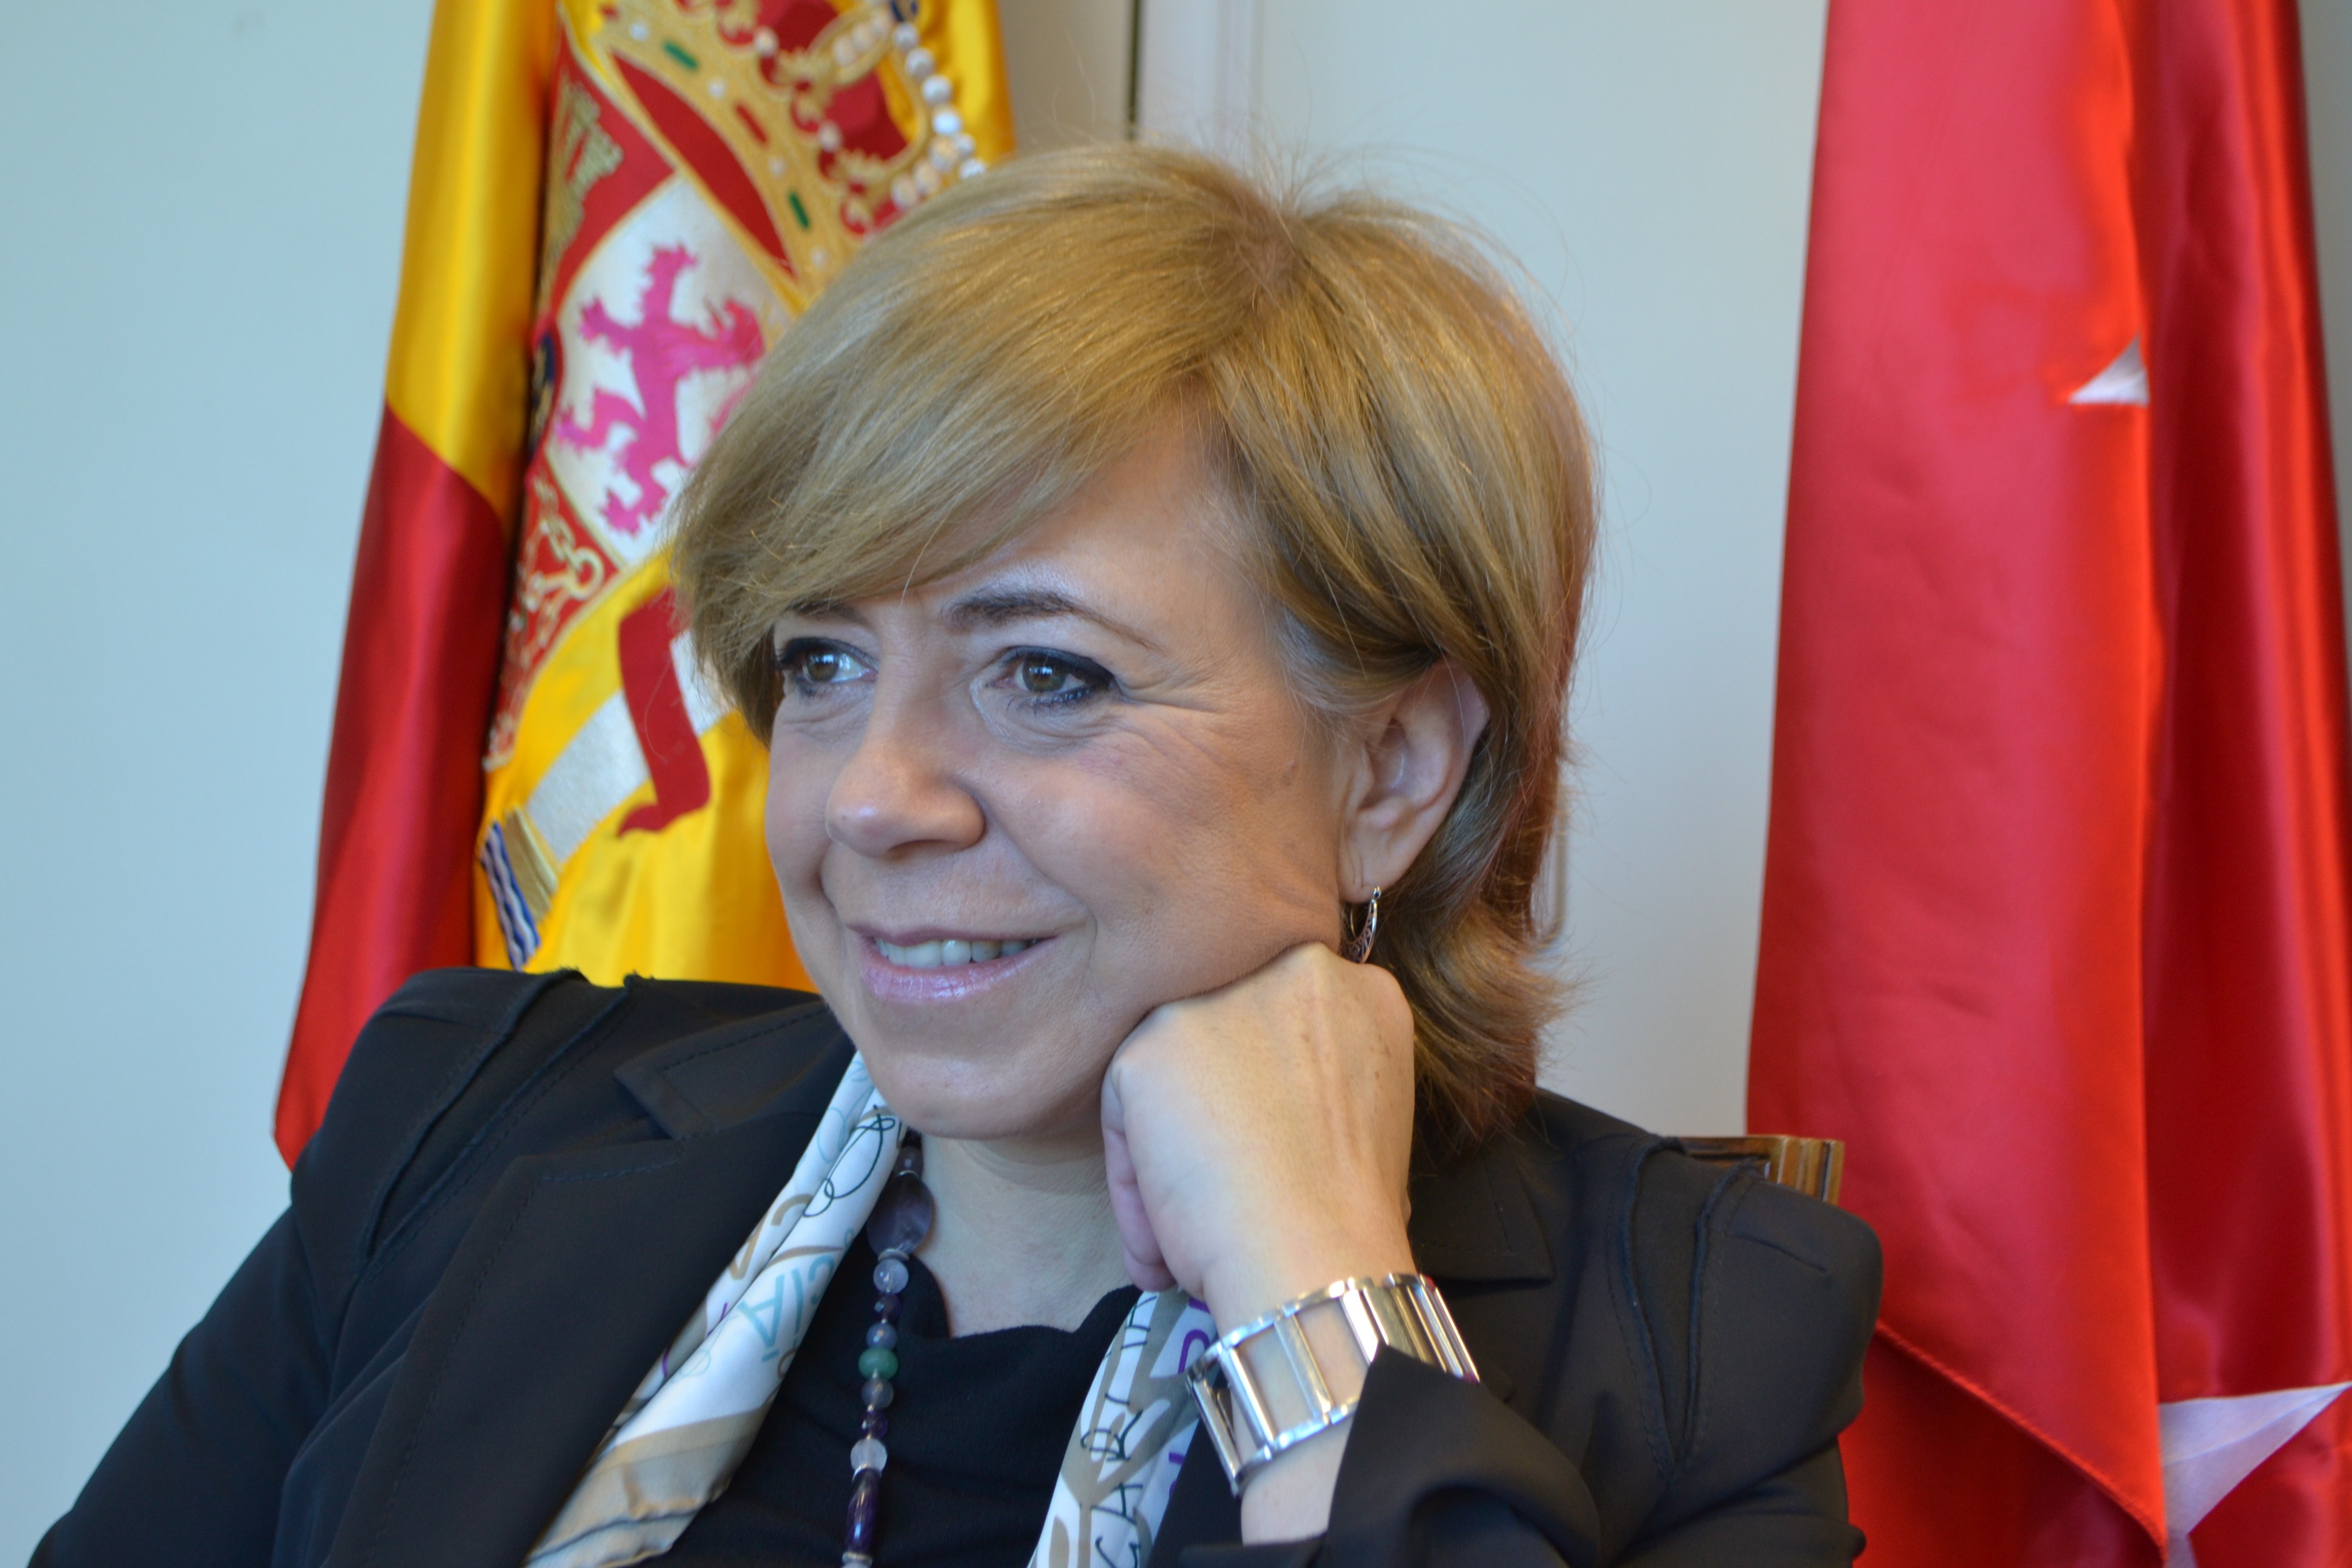 Magistrada progressista, membre de Jutges per la Democràcia i promoguda pel PSOE, aquesta senyora divendres va votar en favor d'inhabilitar el president català Quim Torra.